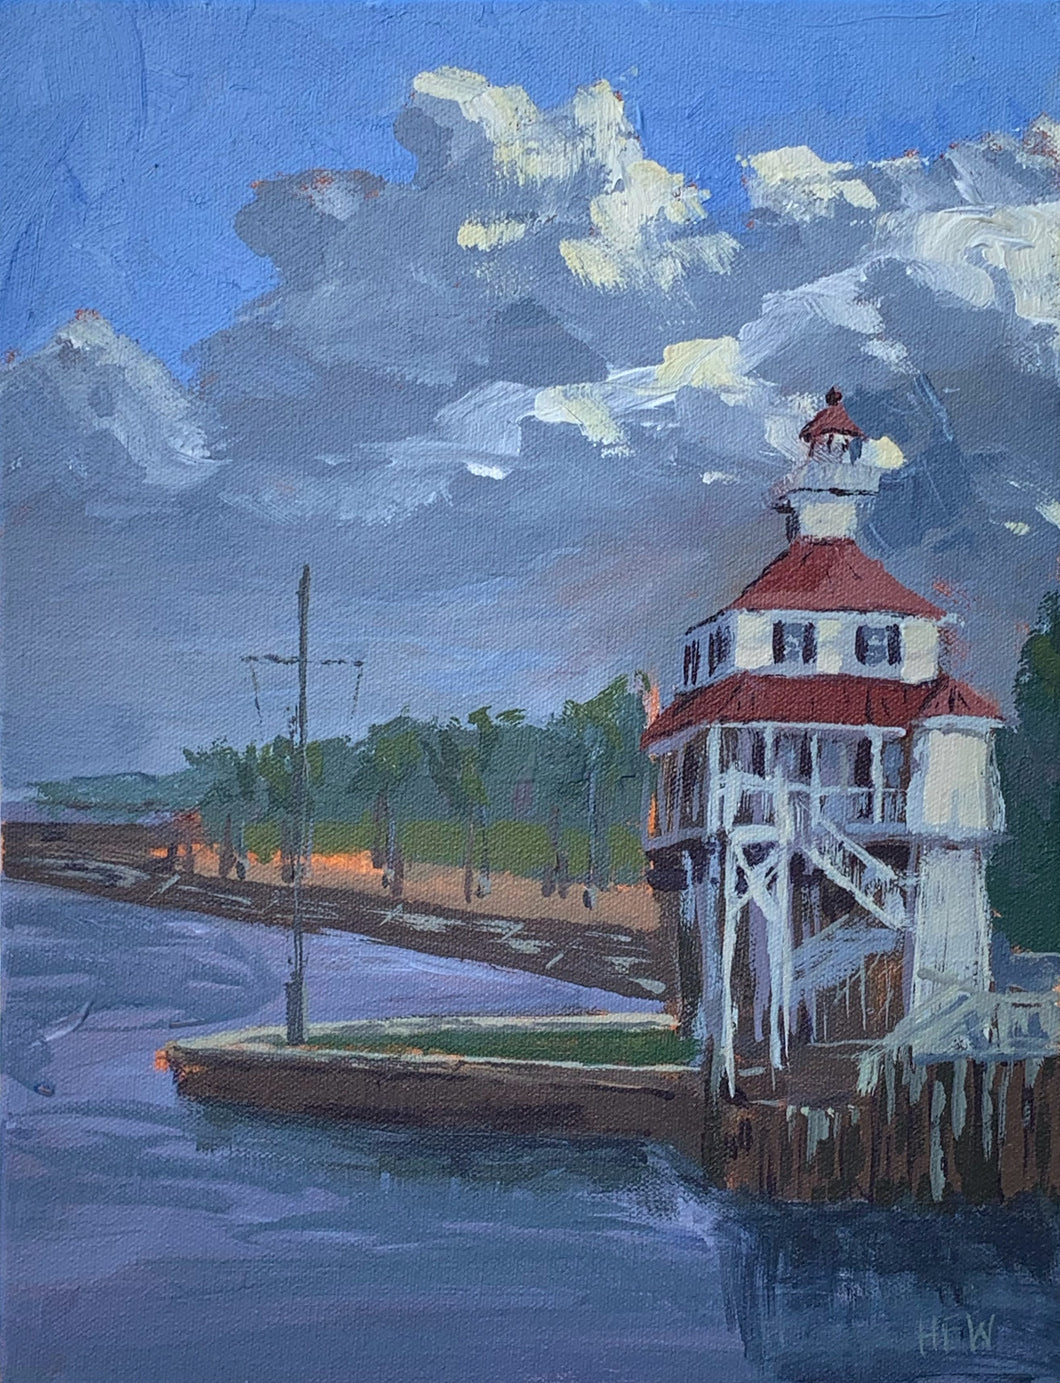 New Basin Canal Lighthouse, 11